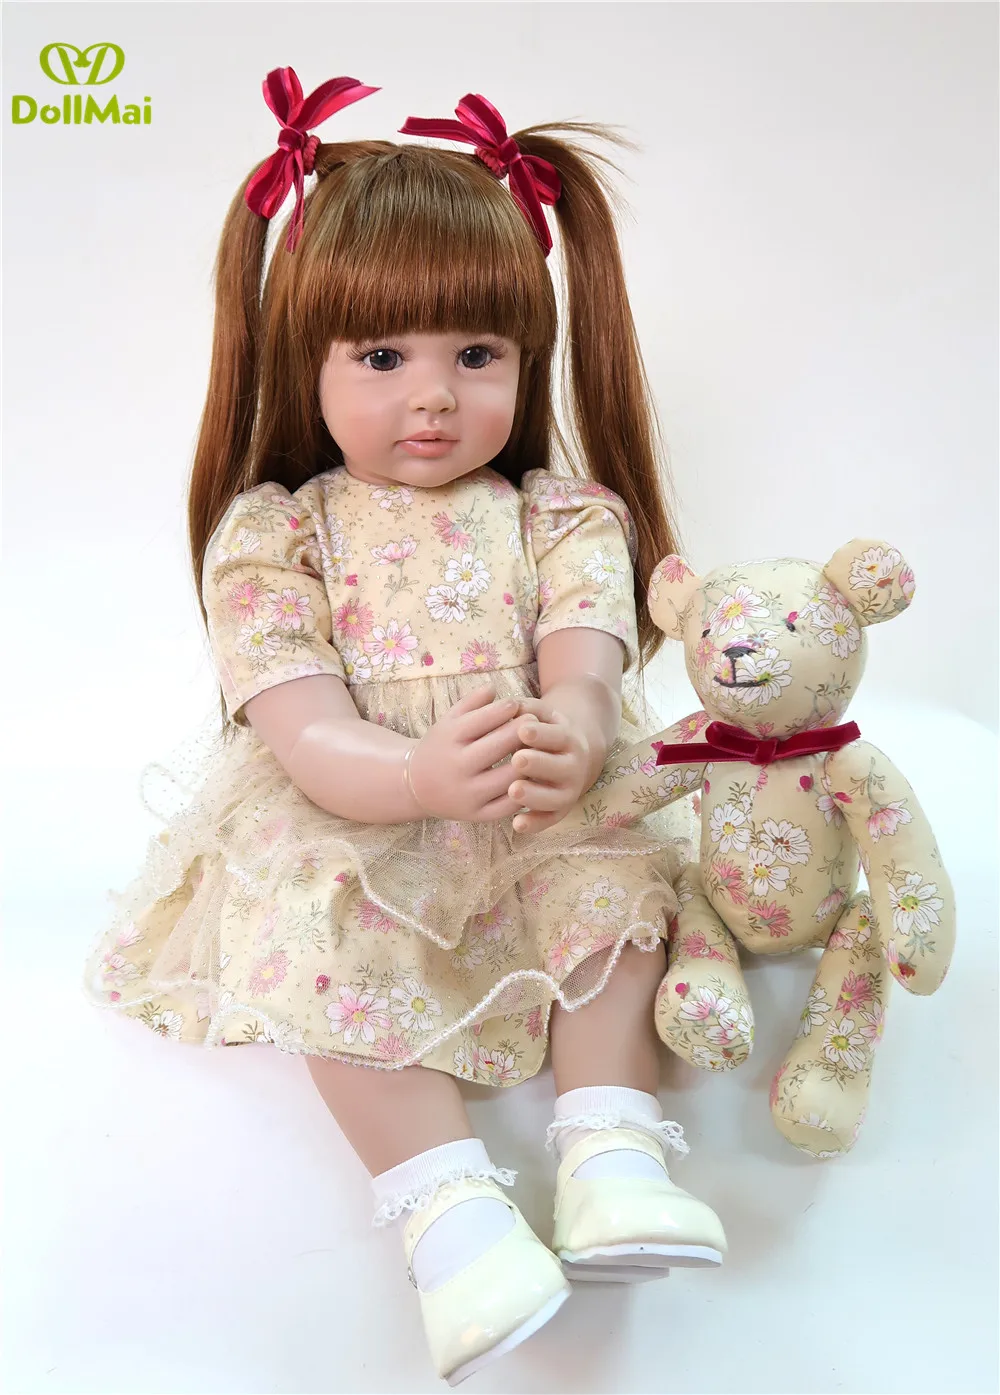 Bebe Boneca reborn baby, силиконовые виниловые куклы для девочек, большой размер 60 см, эксклюзивная модель, настоящая кукла принцессы, подарок